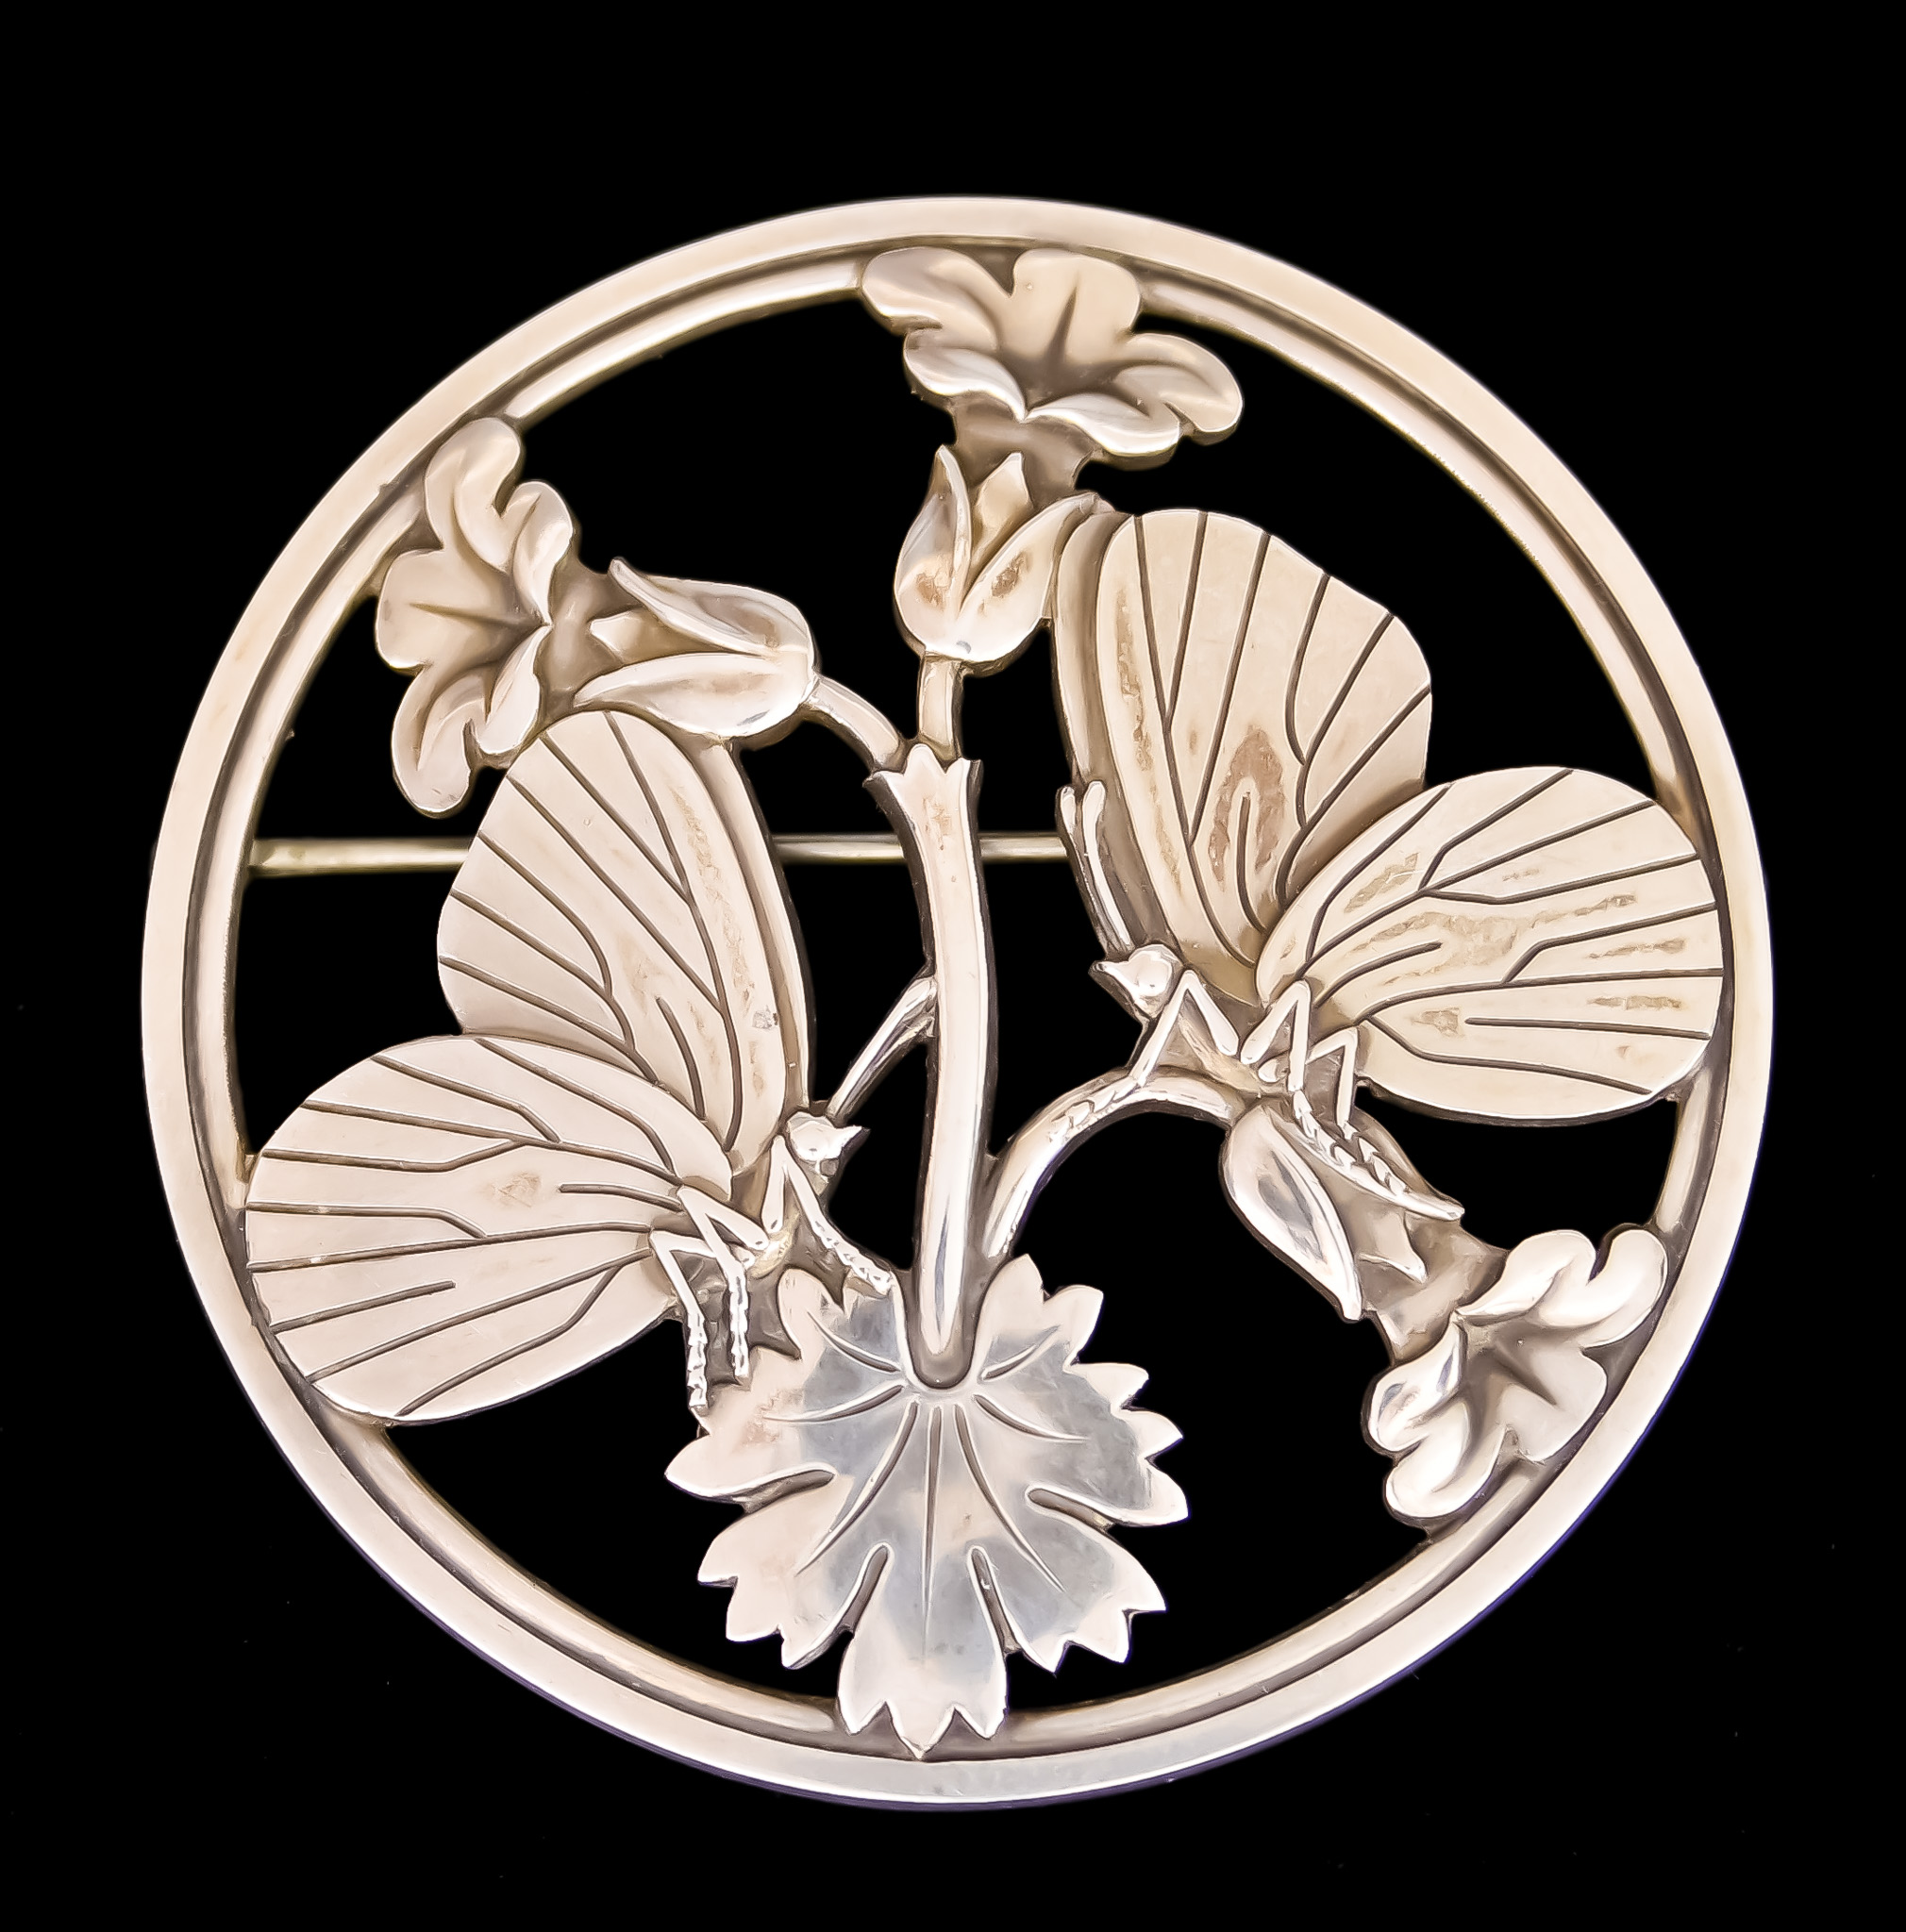 A Danish Silver 'Moonlight Blossom' Circular Brooch, designed by Arno Malinowski for Georg Jensen,